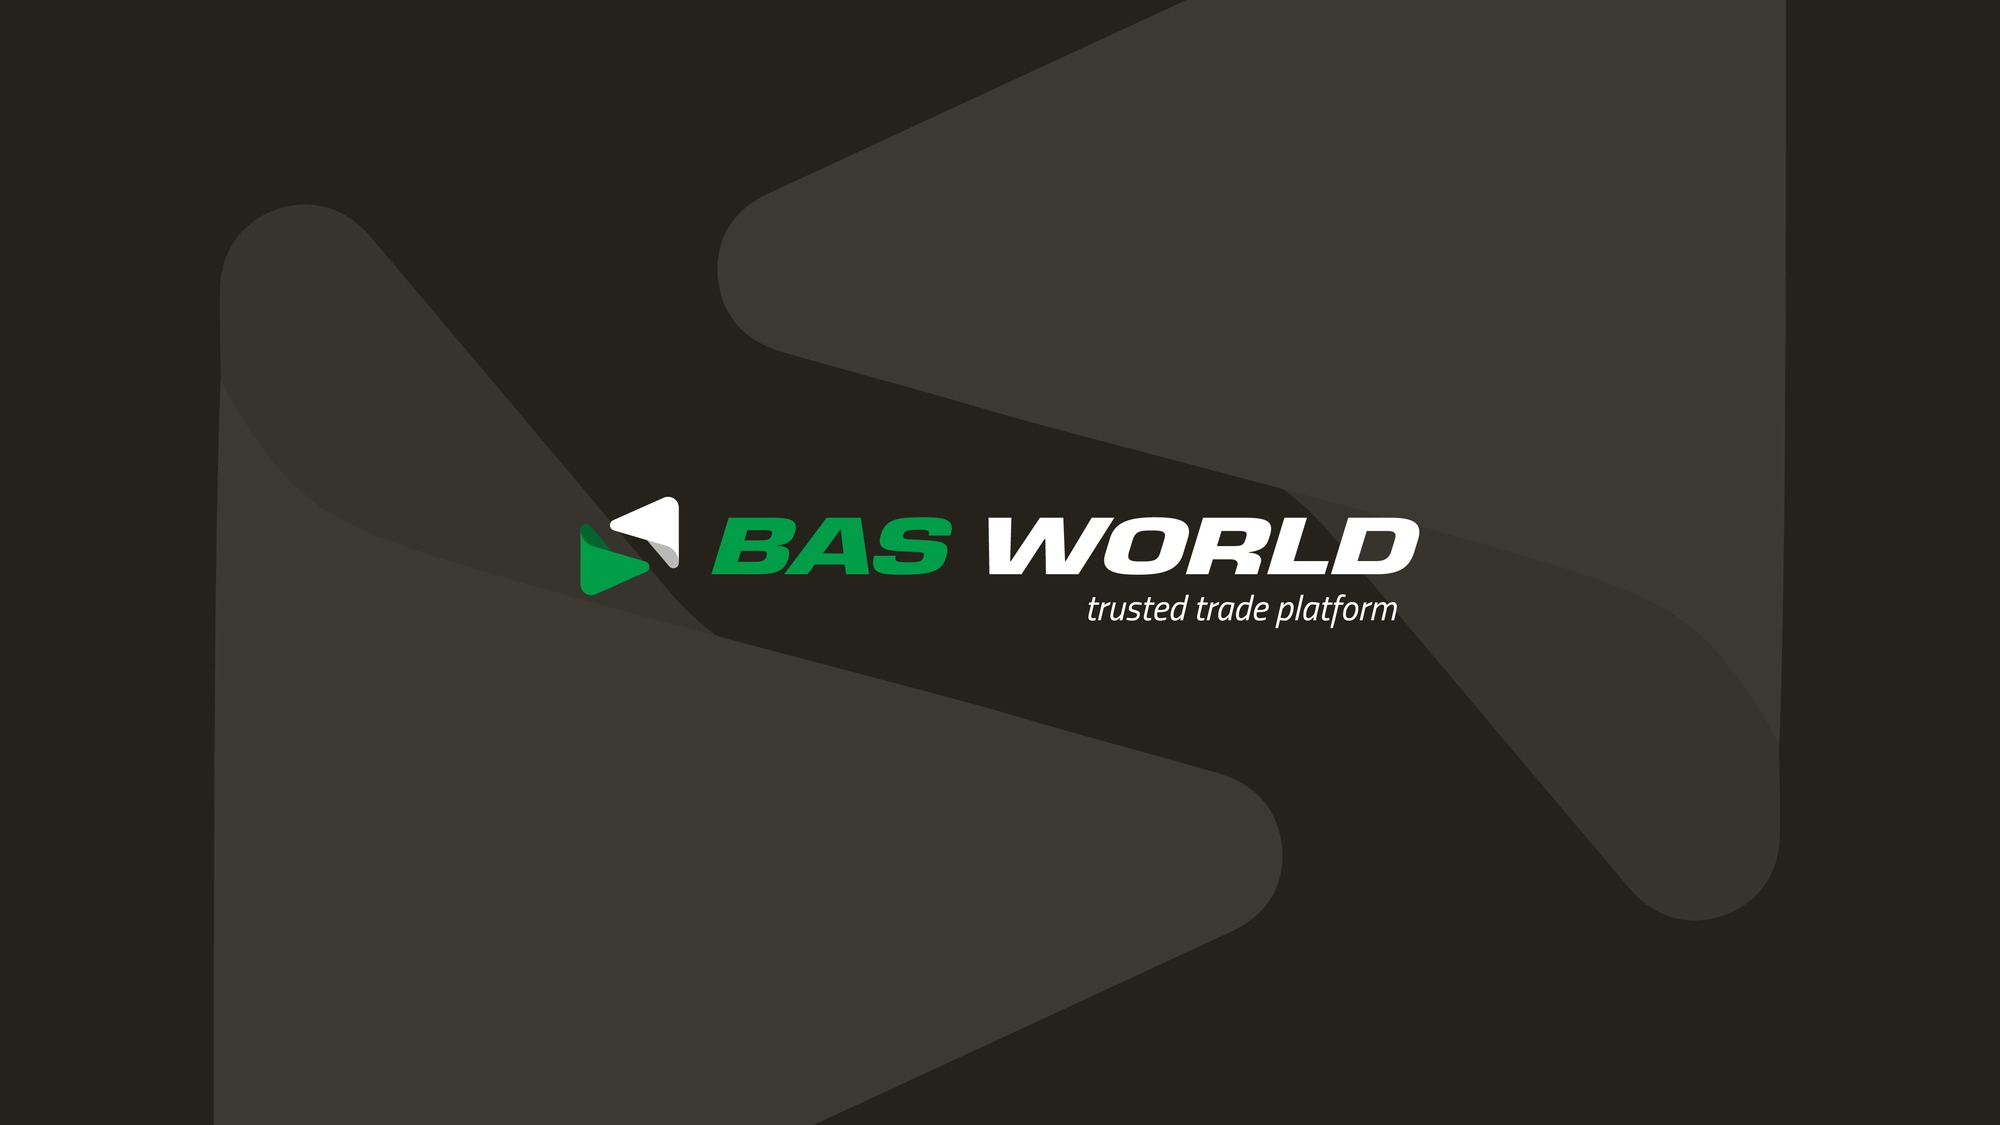 BAS World - myynti-ilmoitukset undefined: kuva BAS World - myynti-ilmoitukset undefined